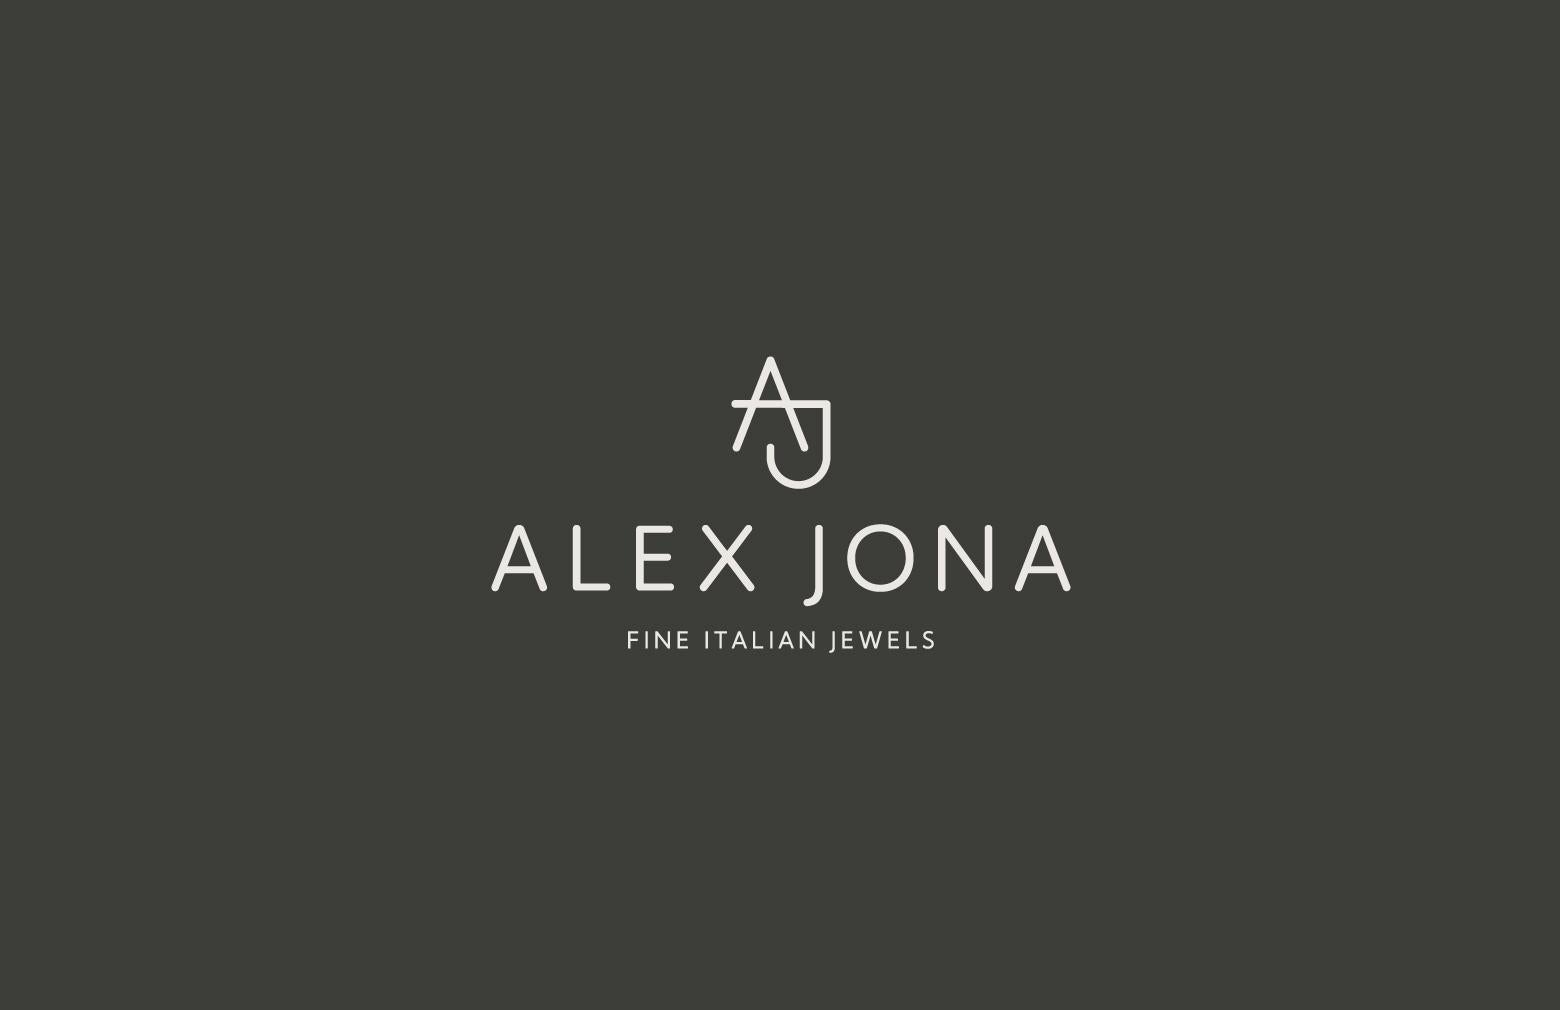 Alex Jona Ice Grey Diamond Slice Charm Necklace in 18 Karat Yellow Gold For Sale 5